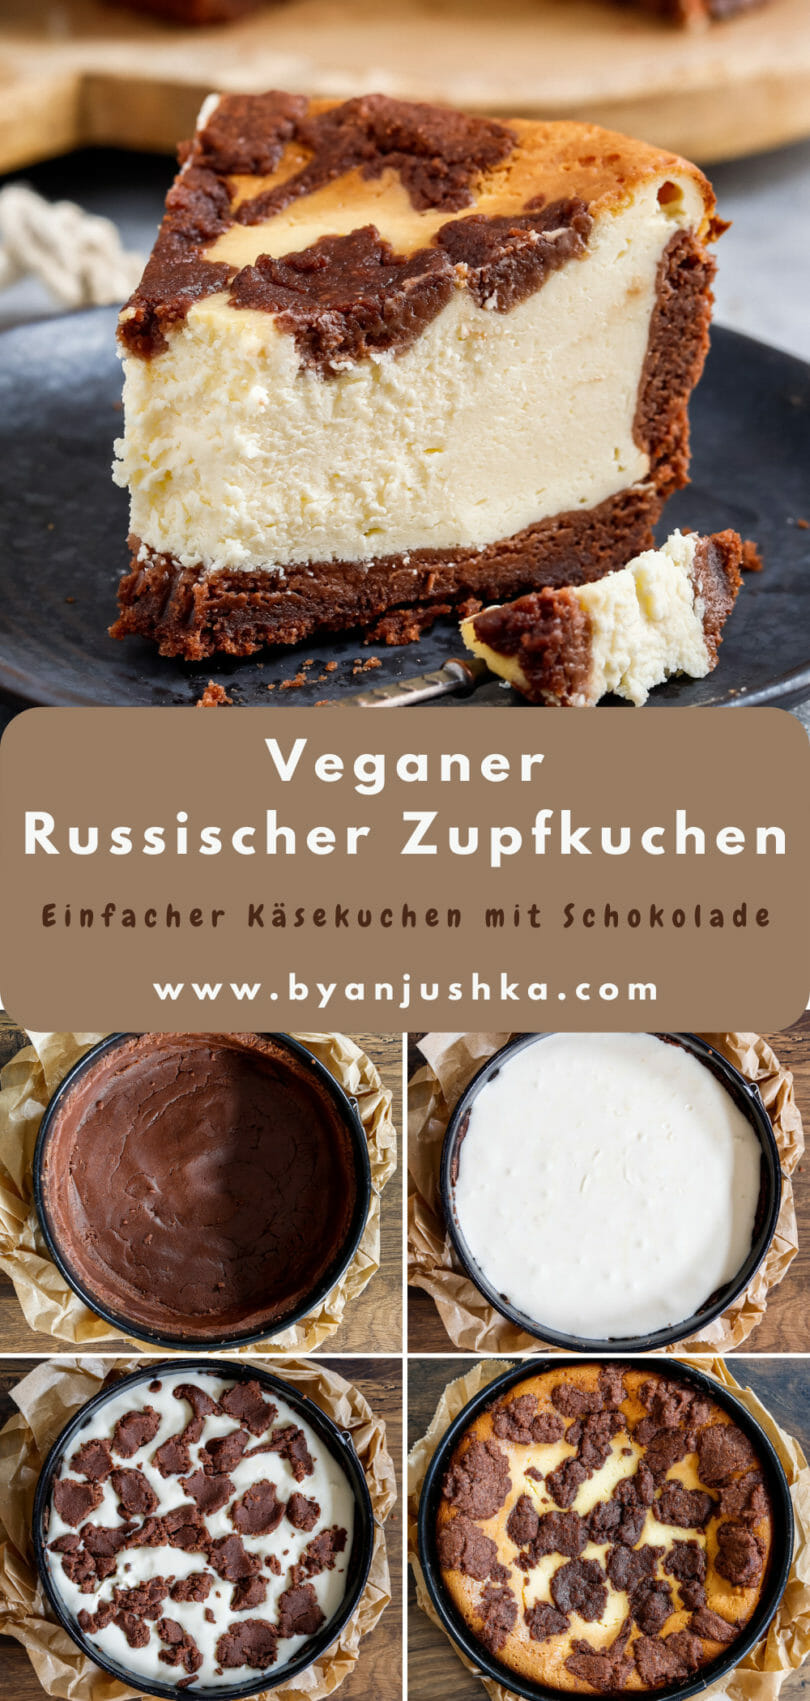 Collage für das Rezept "Veganer Russischer Zupfkuchen" zum teilen auf Pinterest